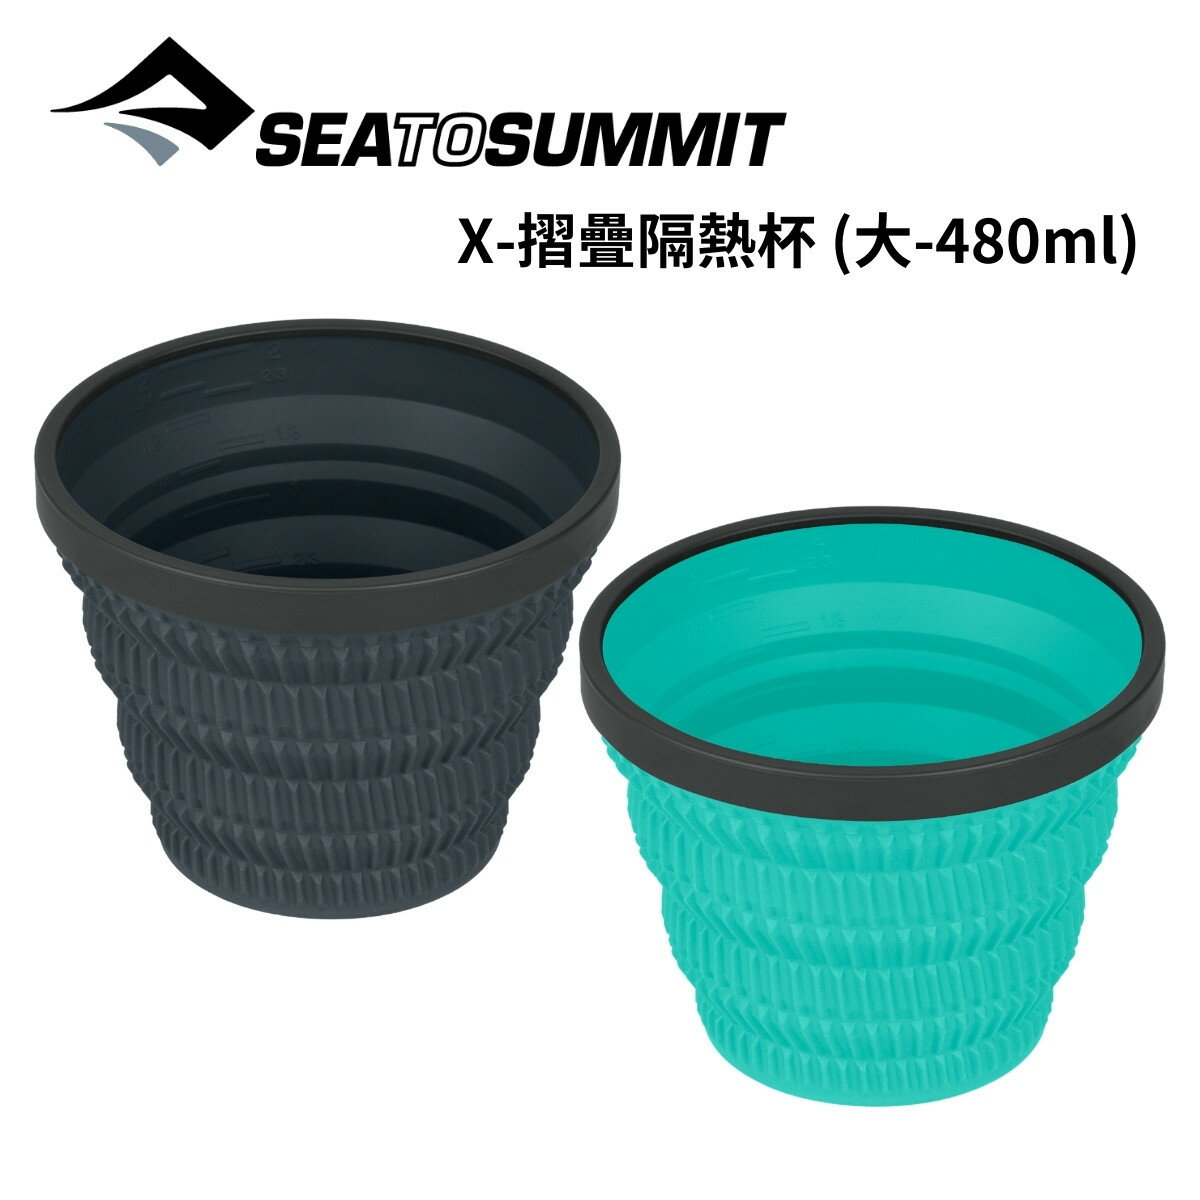 【Sea to Summit】X-摺疊隔熱杯 (大-480ml)